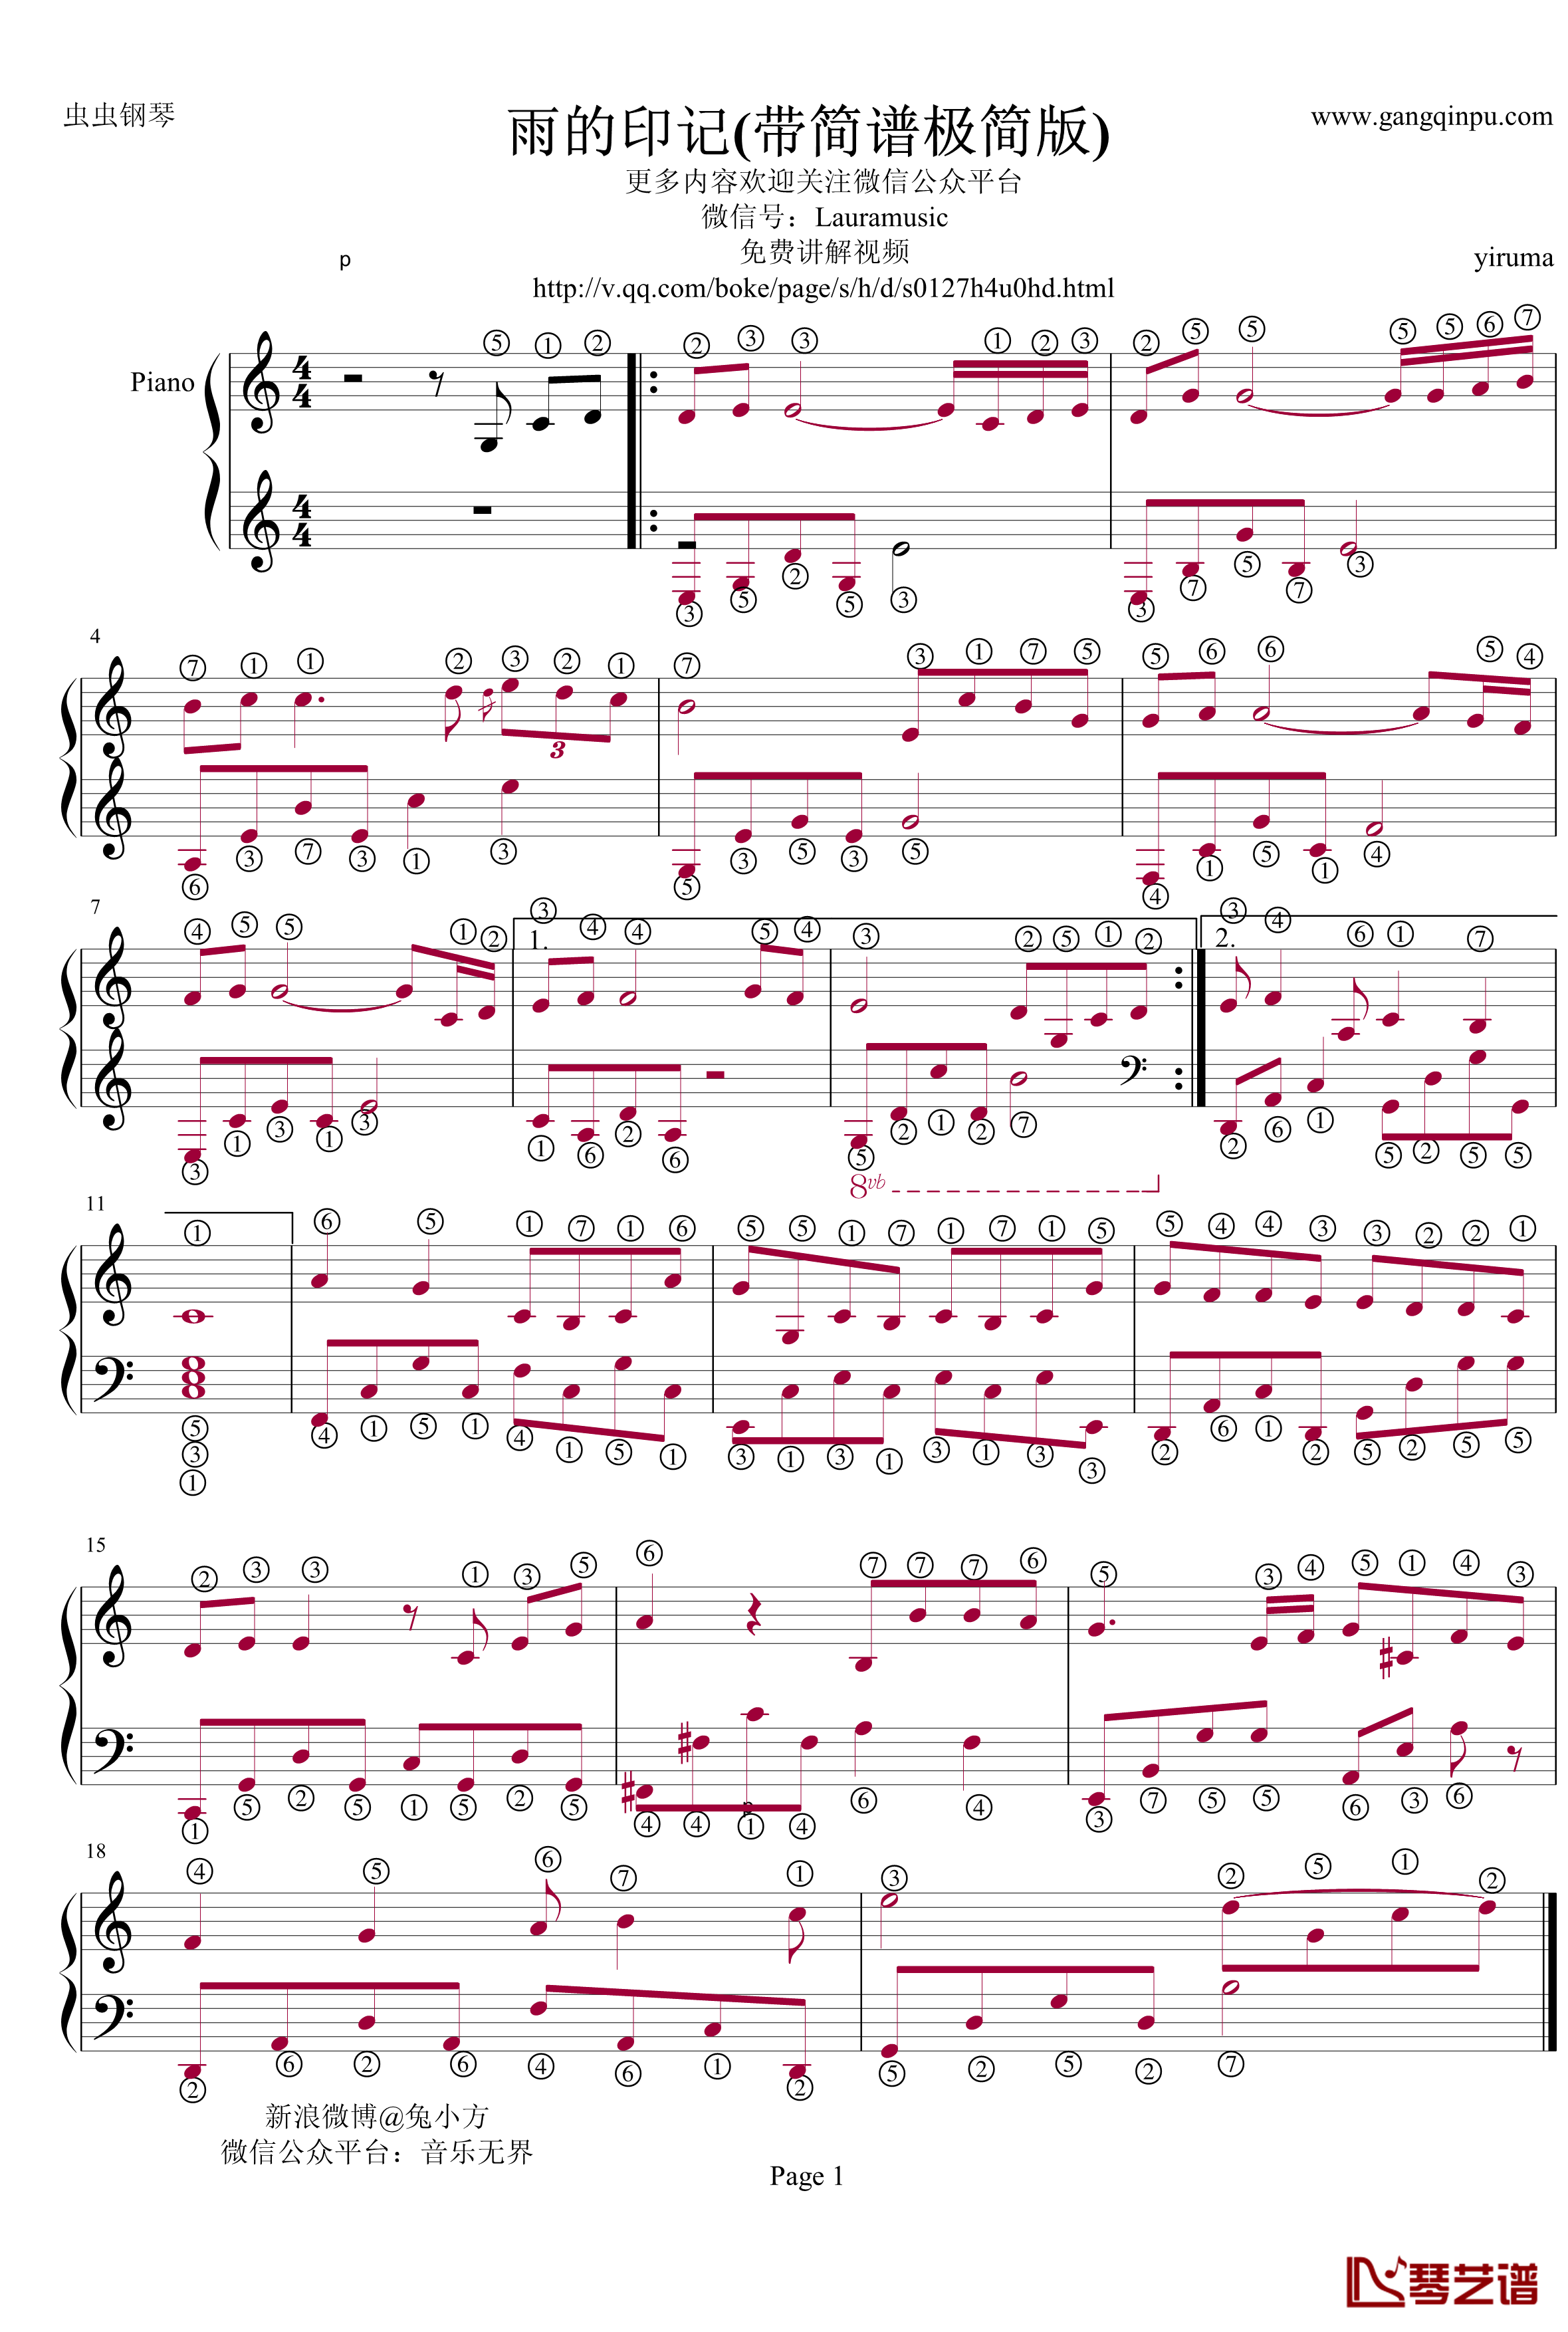 雨的印记钢琴谱-带简谱极简版-Yiruma1